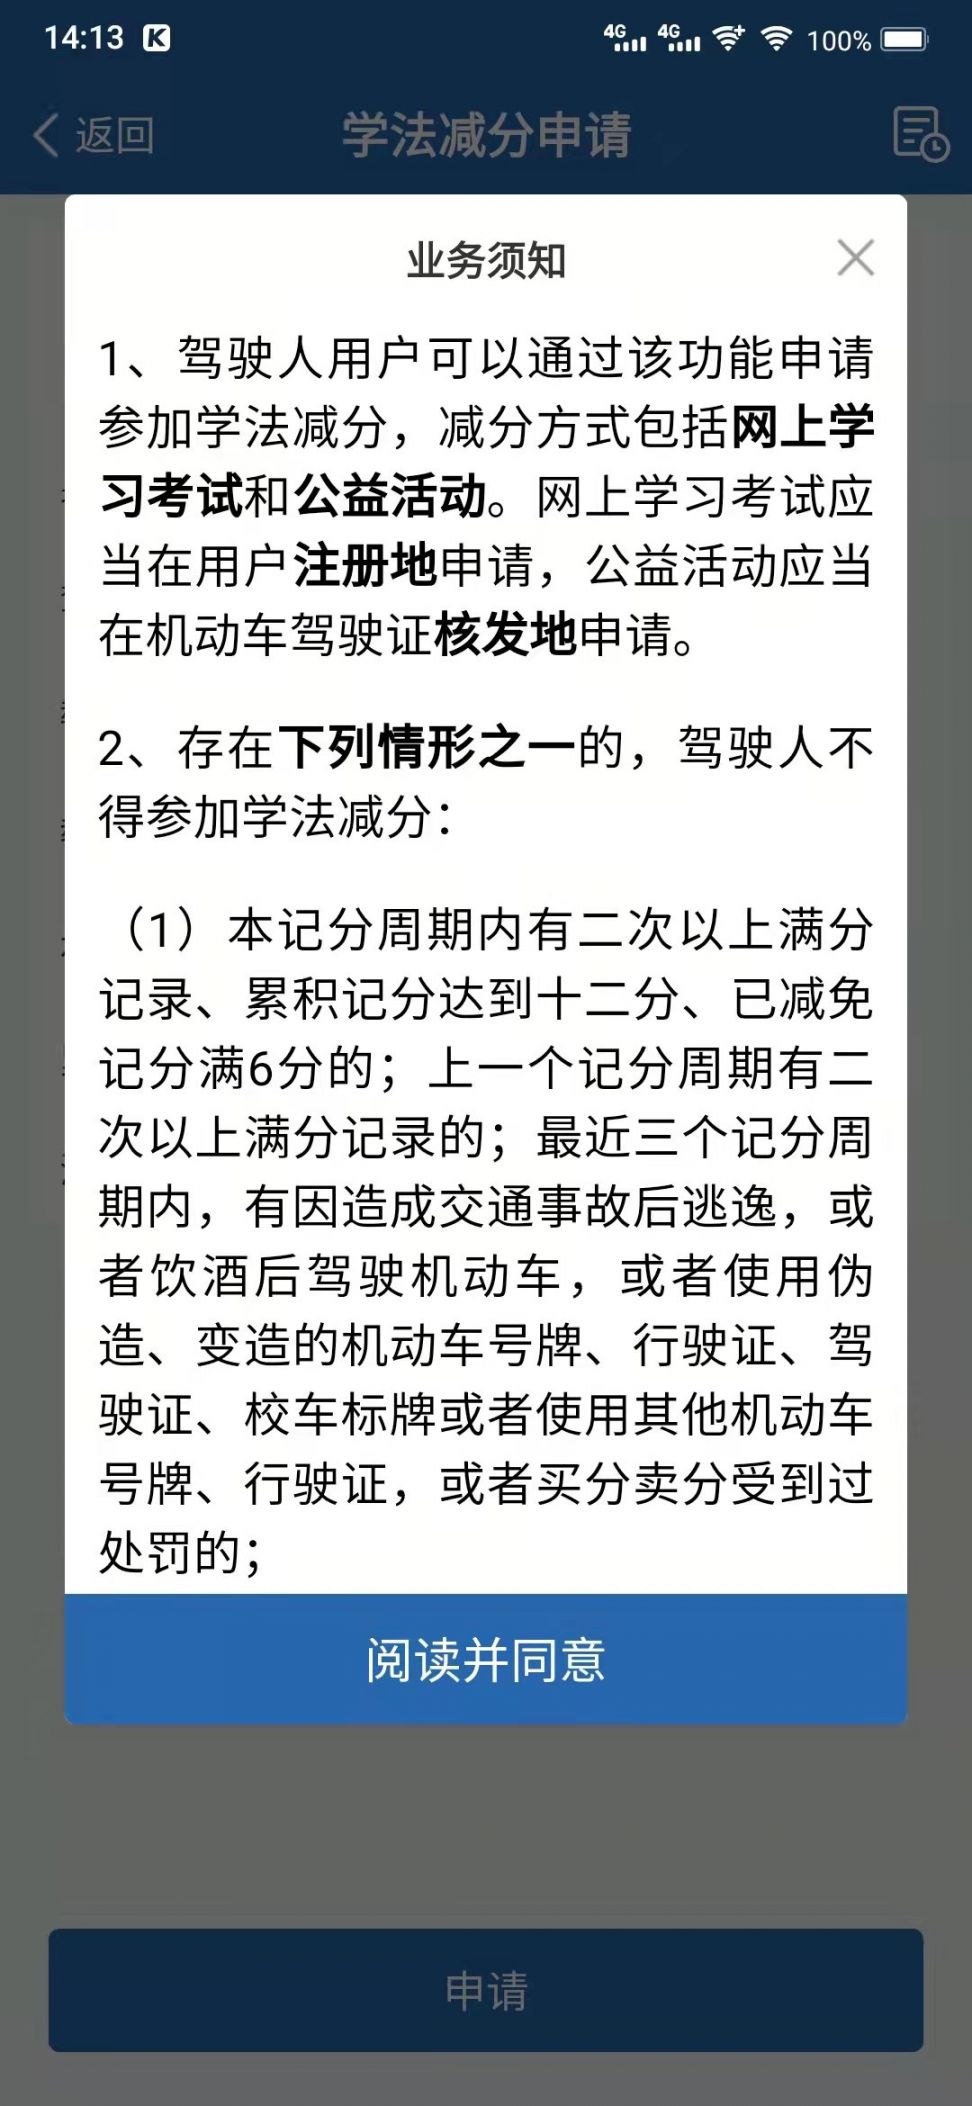 上海学法减分申请流程